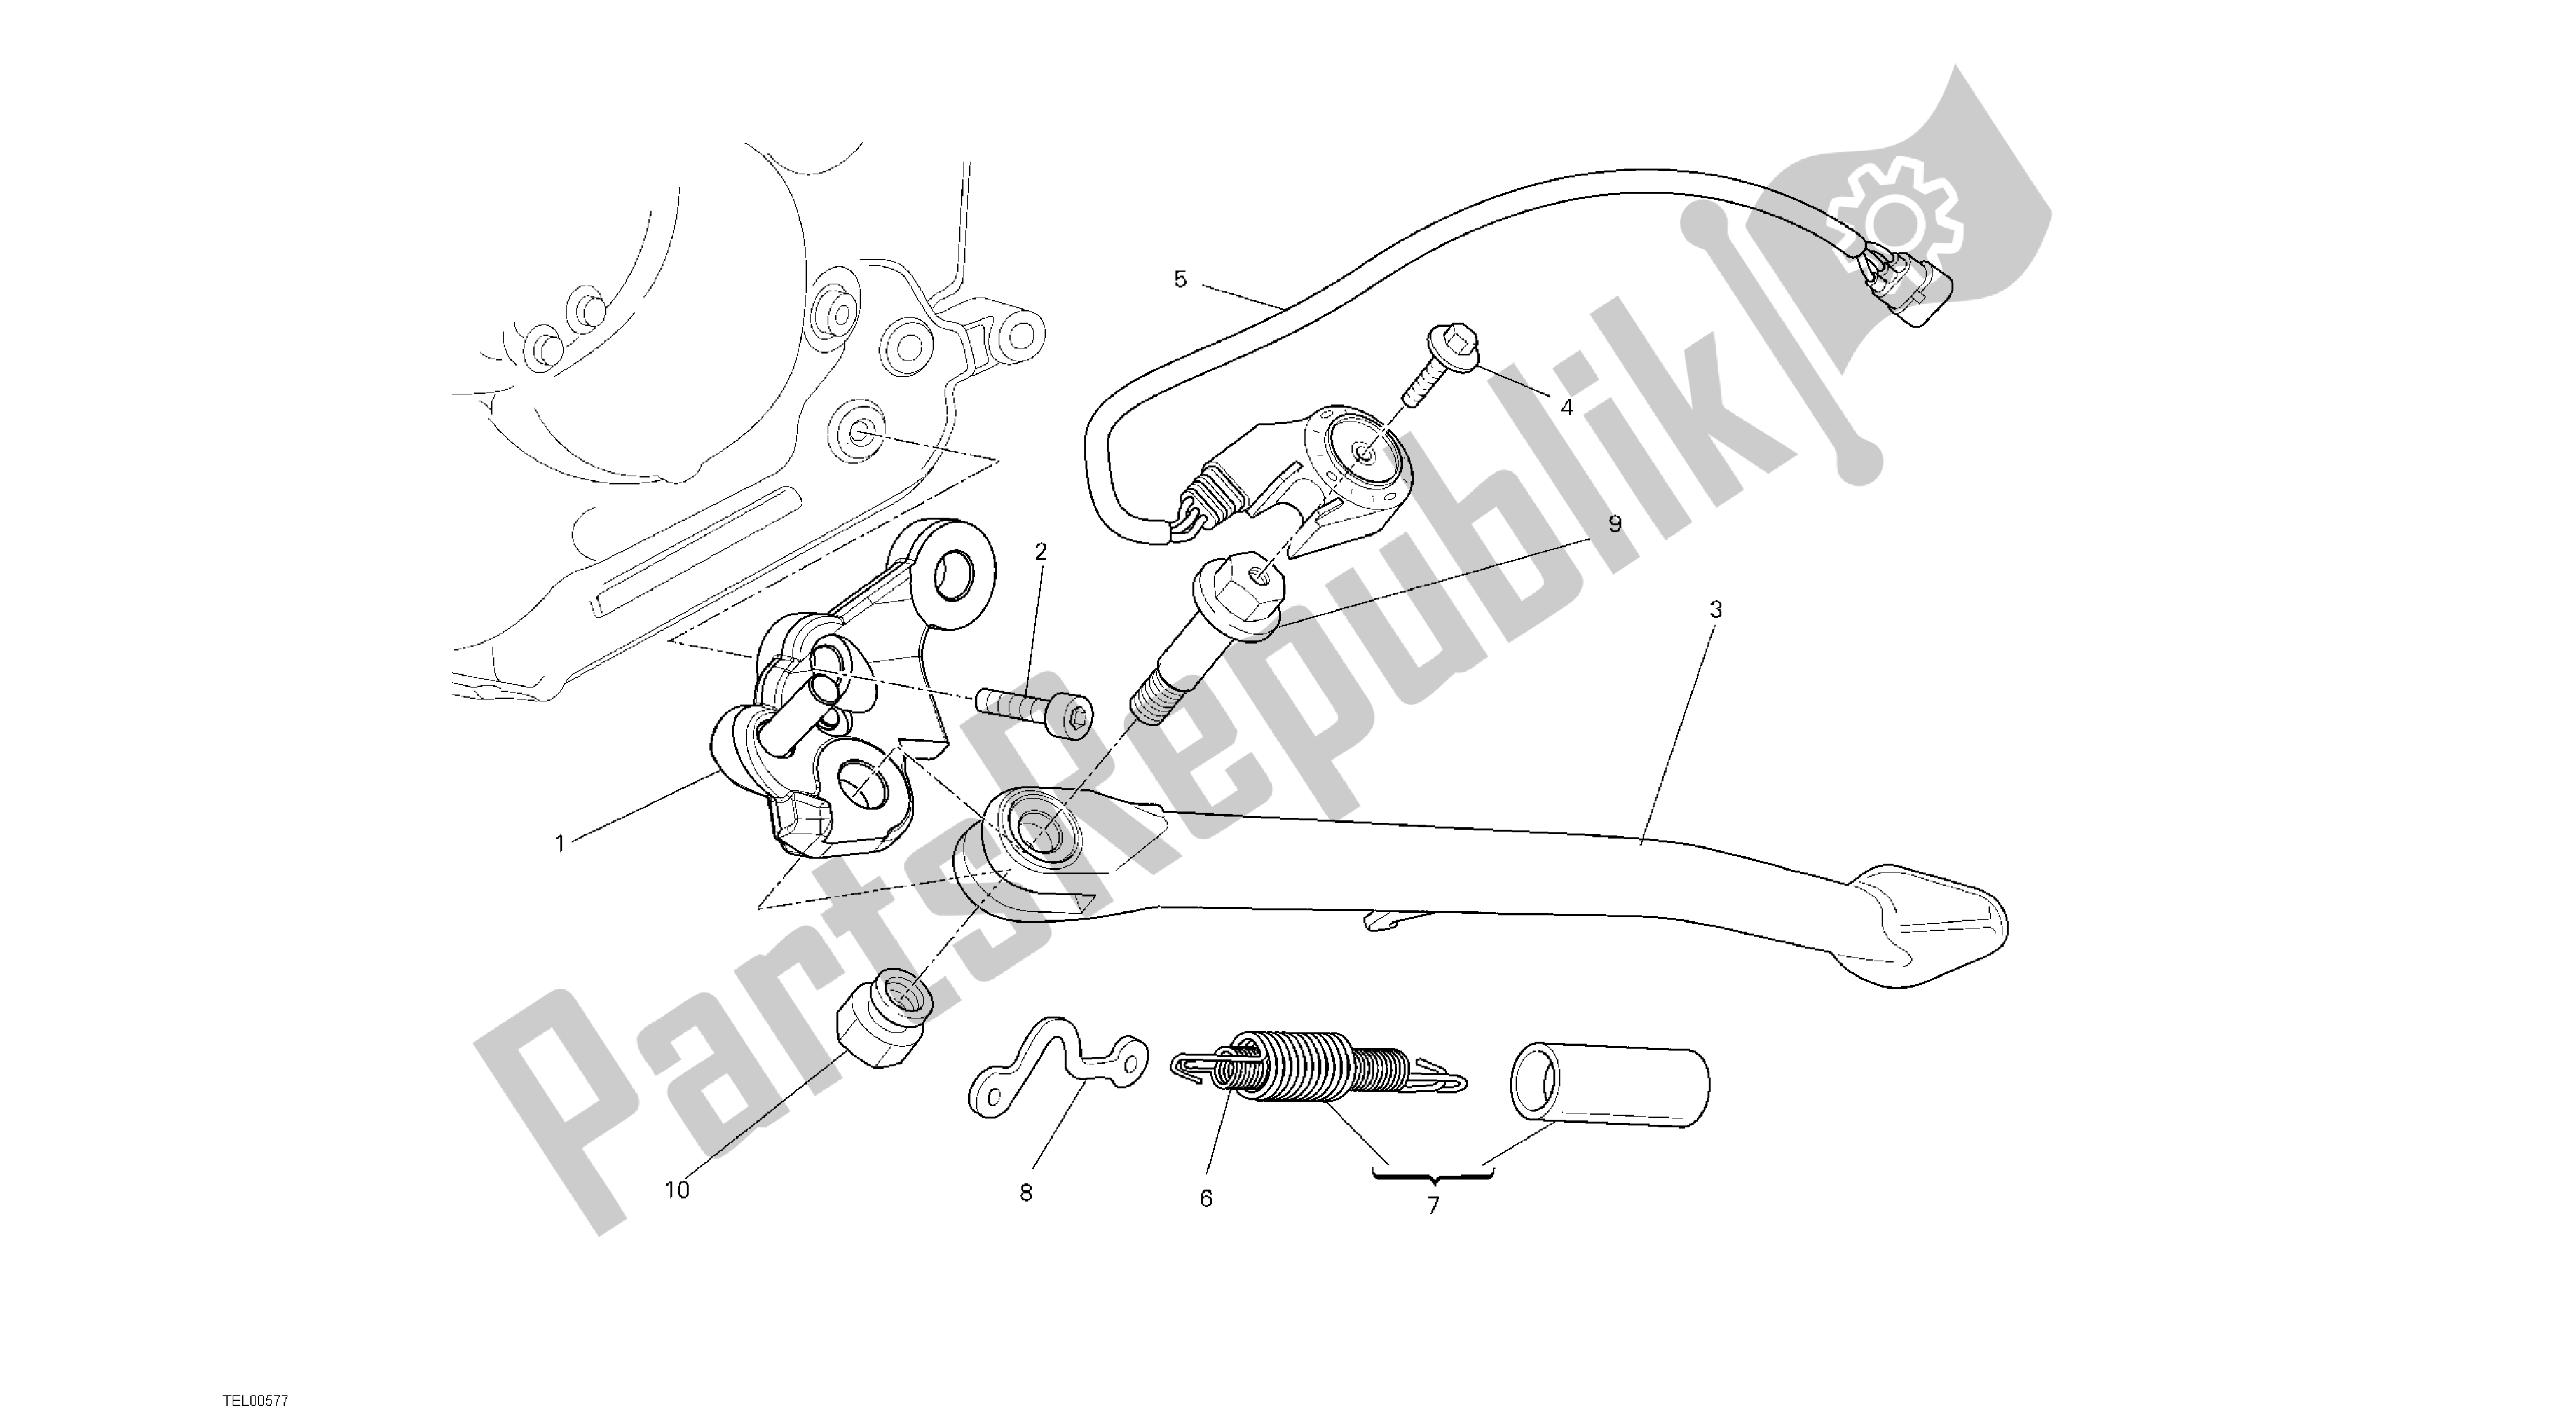 Todas las partes para Dibujo 017 - Soporte Lateral [mod: M1100dsl; Xst: Aus, Chn, Eur, Jap] Grupo Fr Ame de Ducati Monster 1100 2013